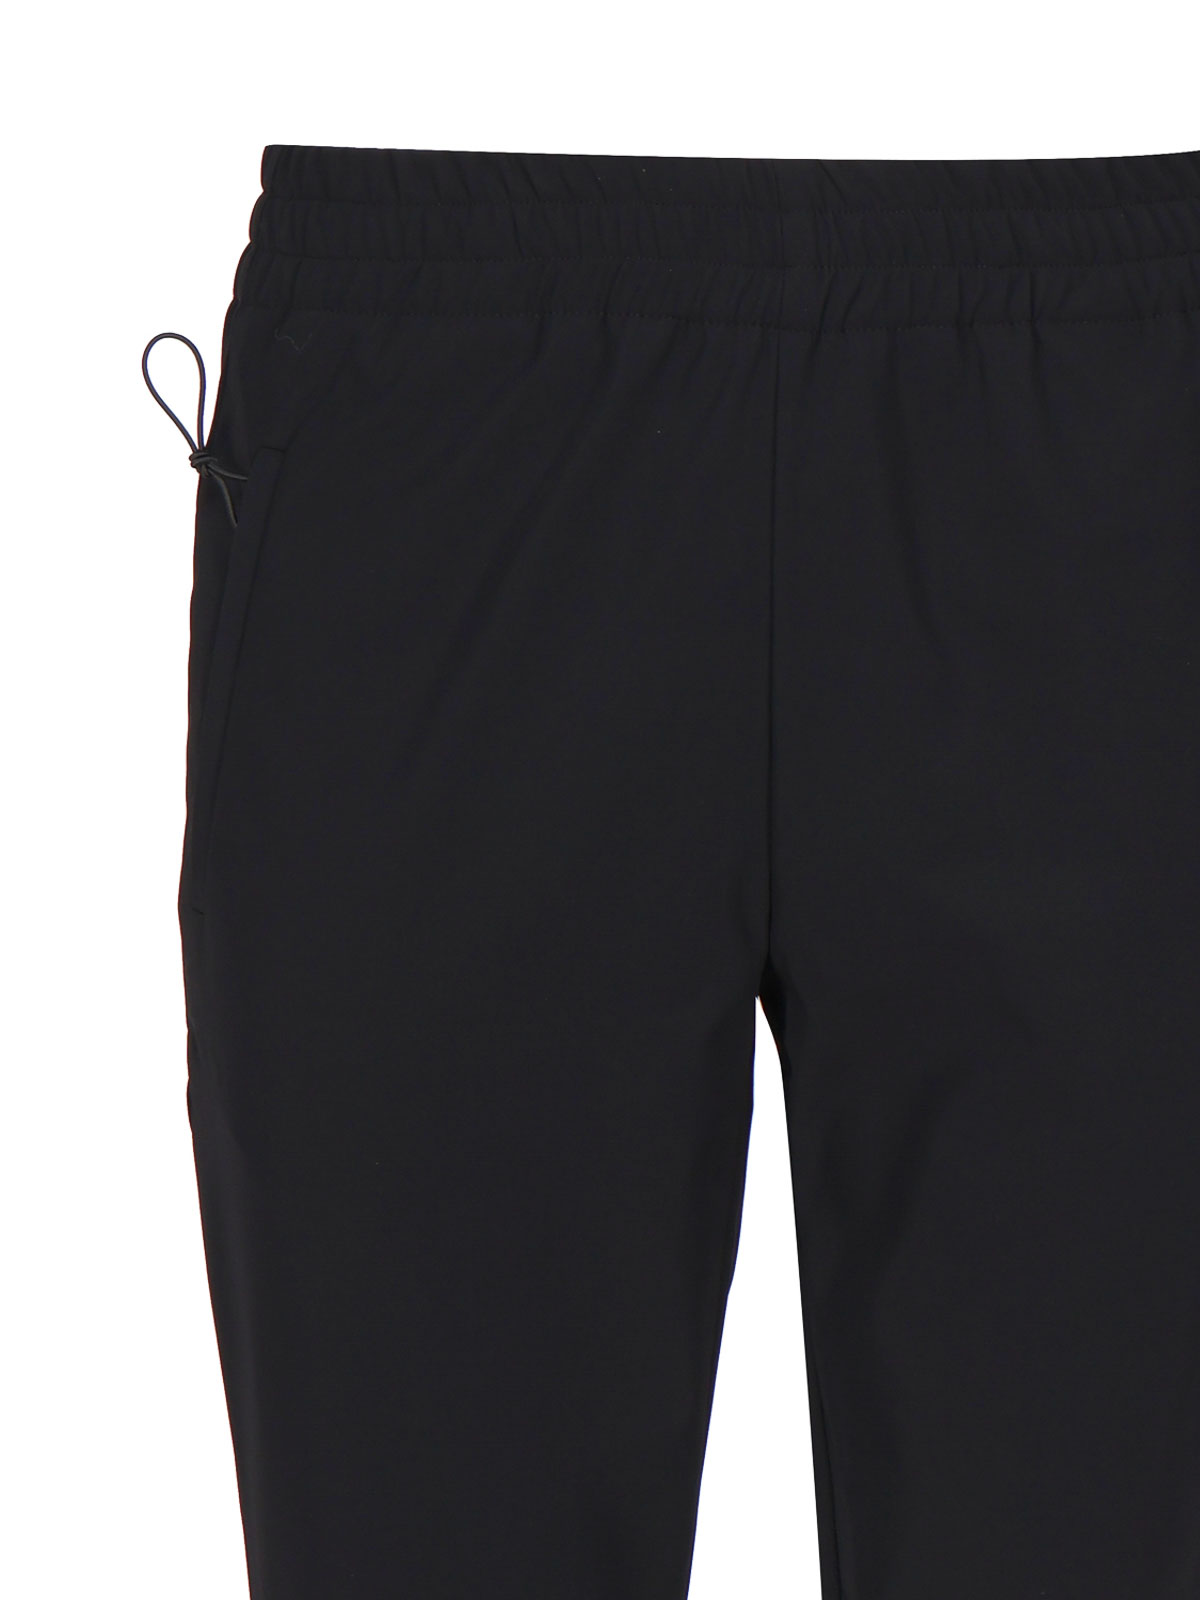 Shop Rrd Roberto Ricci Designs Casual Pants In Black